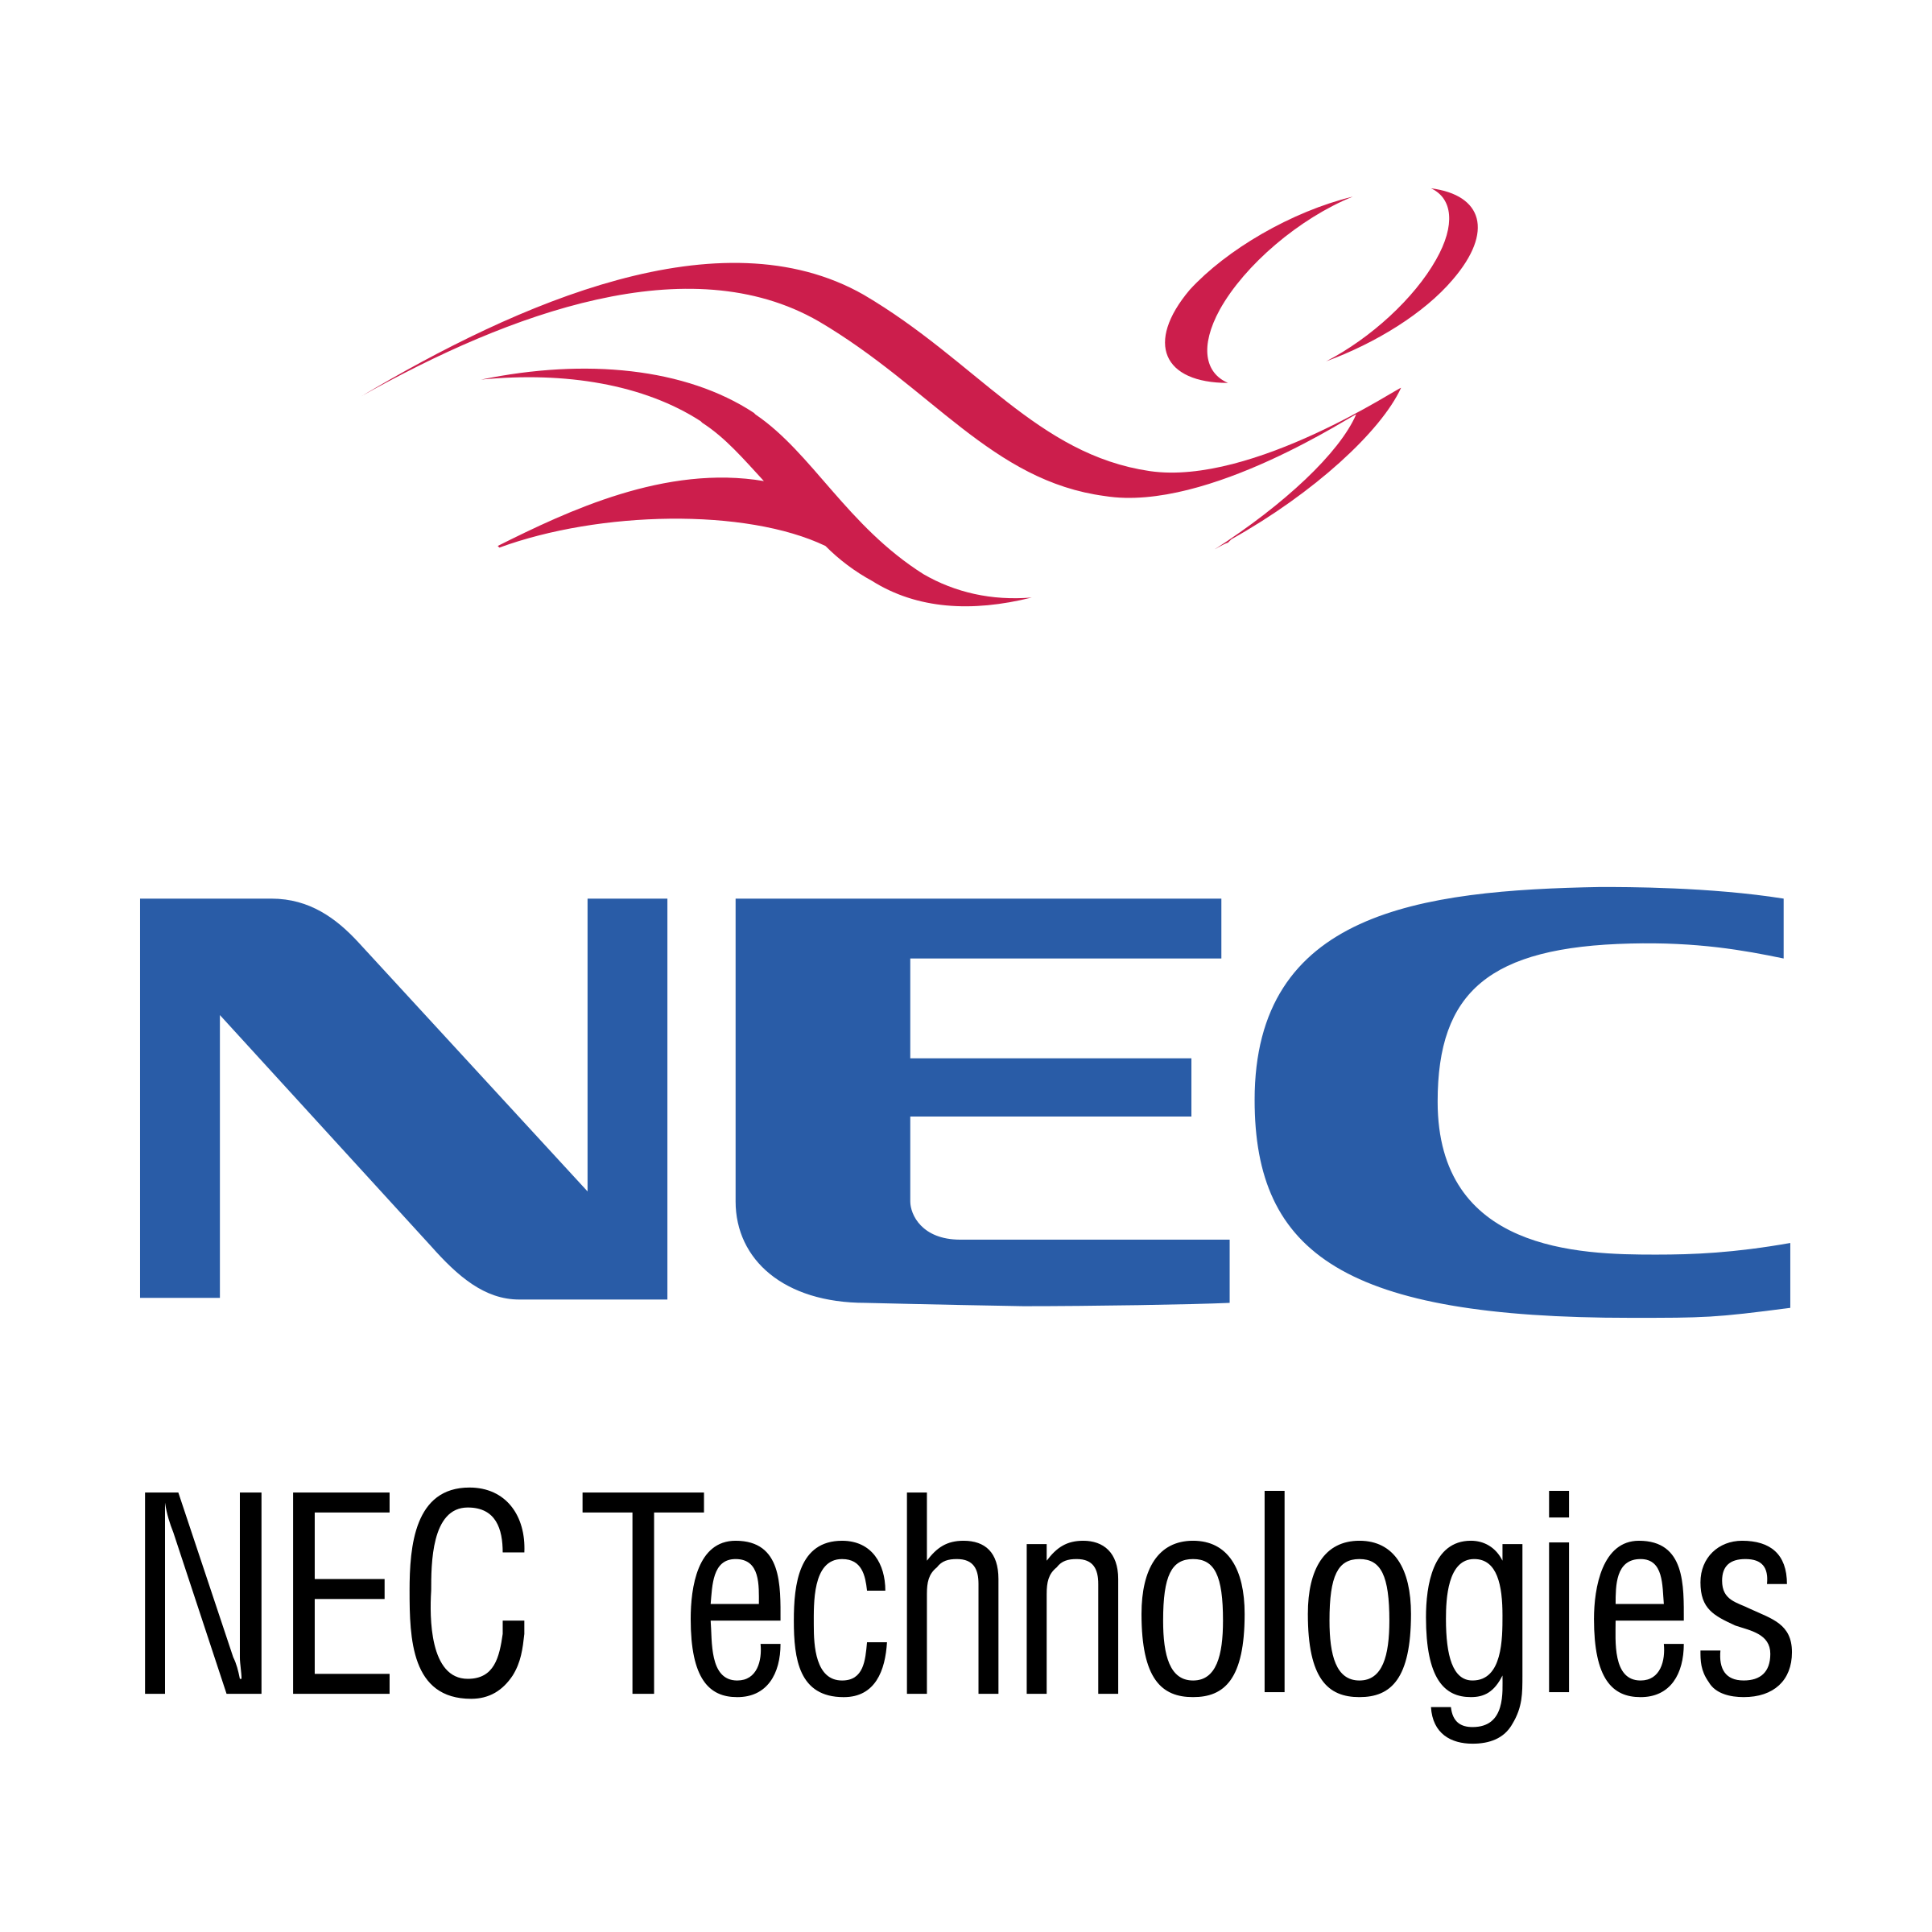 NEC Logo - NEC Logo PNG Transparent & SVG Vector